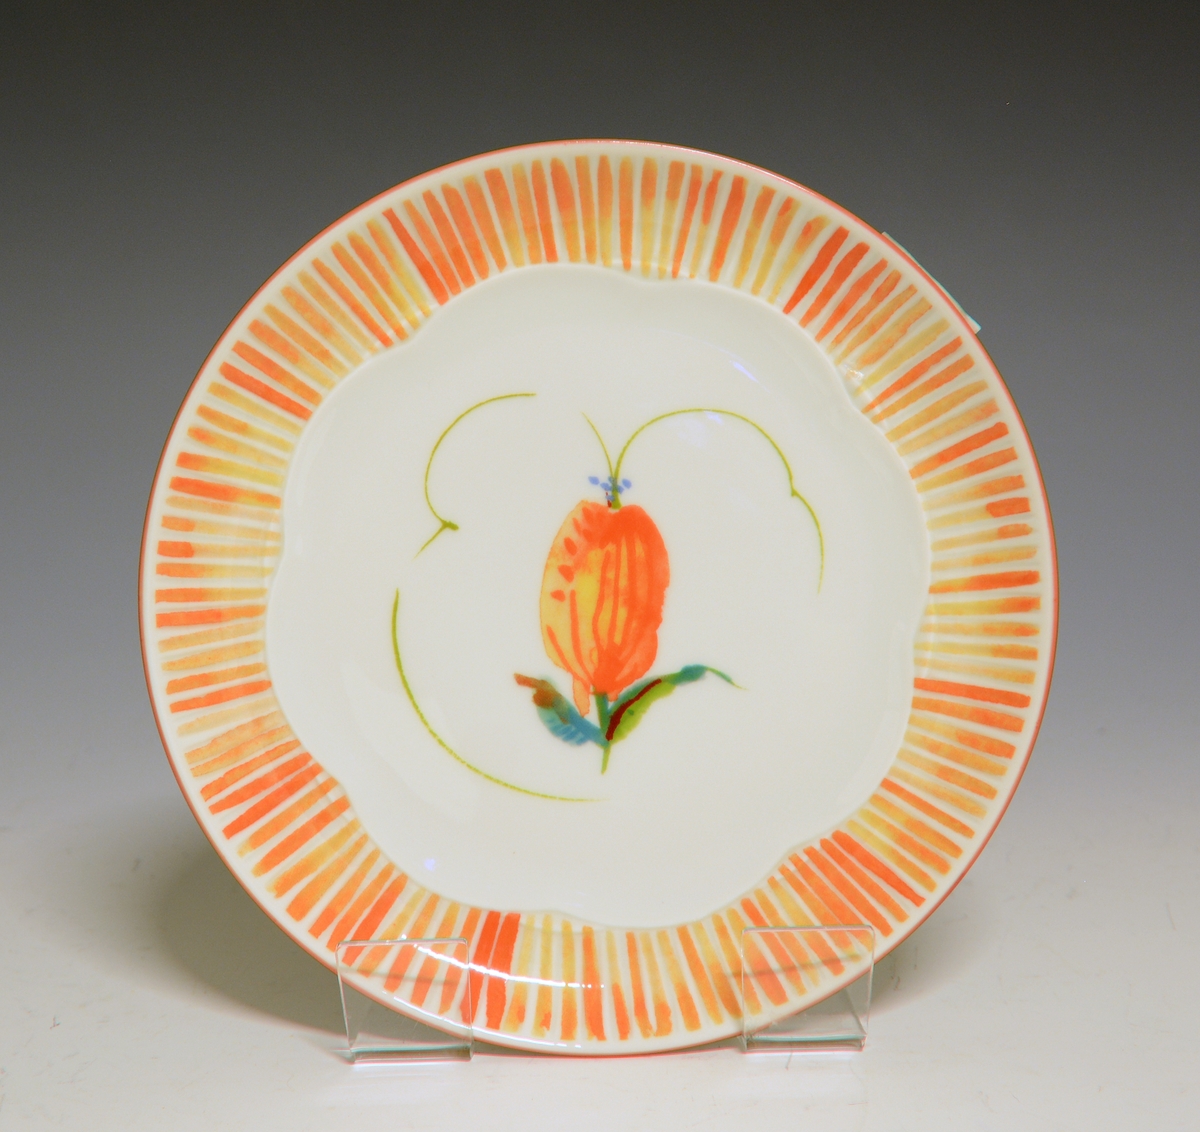 Frokosttallerken av porselen med hvit glasur. I senter en oransje blomst. På fanen oransje, radiære striper.
Modell: 2700 Fiore av Eeva Terävä
Dekor: Spring av Victoria Berge